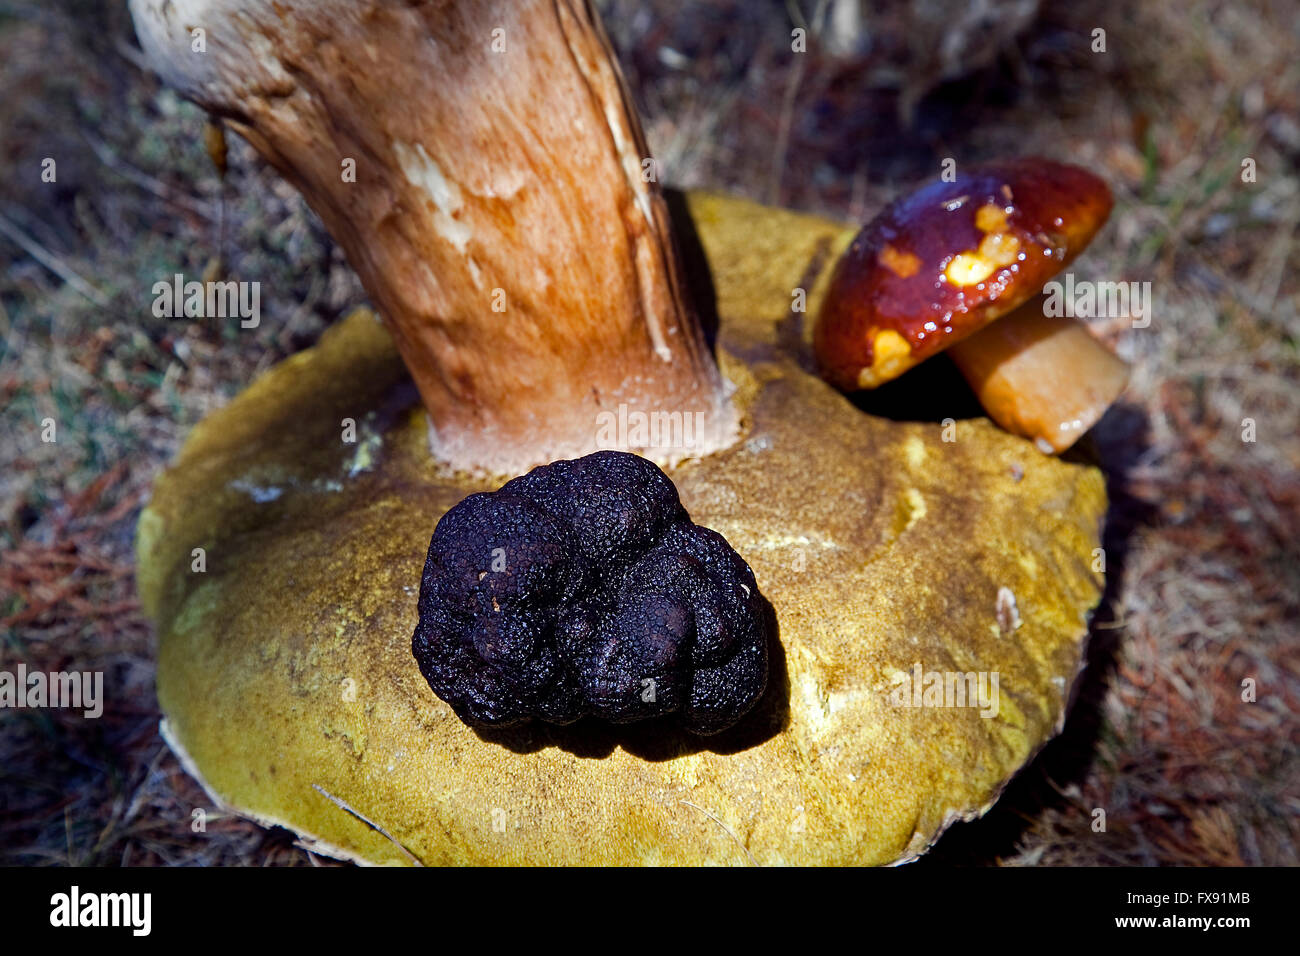 Black truffle, tuber melanosporum, on Porcini mushroom, boletus edulis. Cabrejas del pinar, Soria. Castile-Leon. Spain Stock Photo